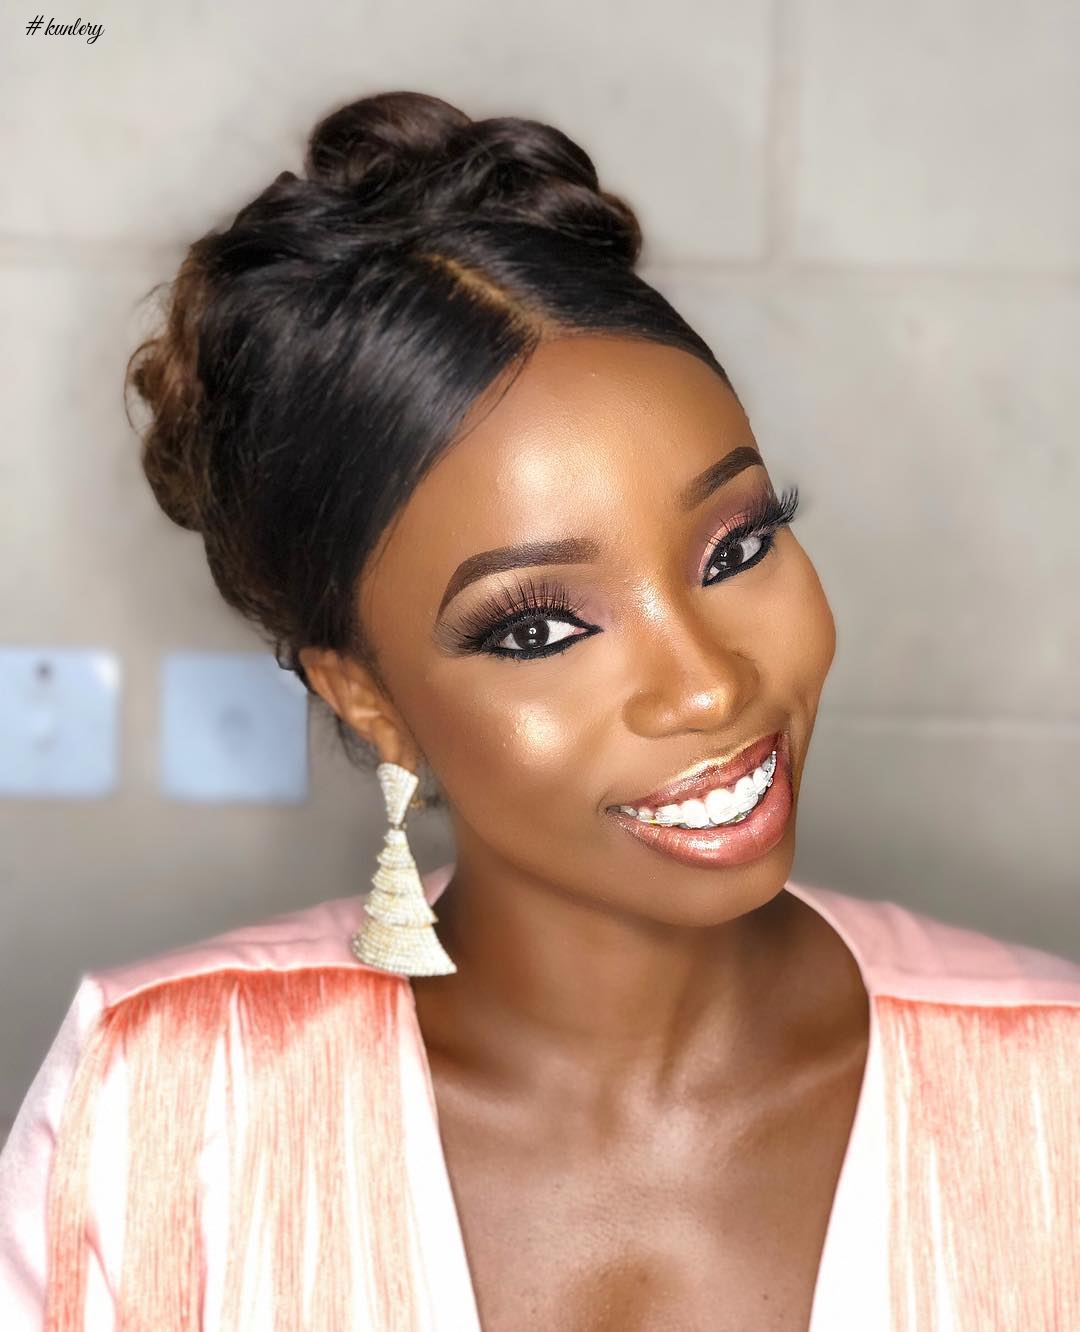 Actress & BBNaija Star, Bamike “Bam Bam” Olawunmi